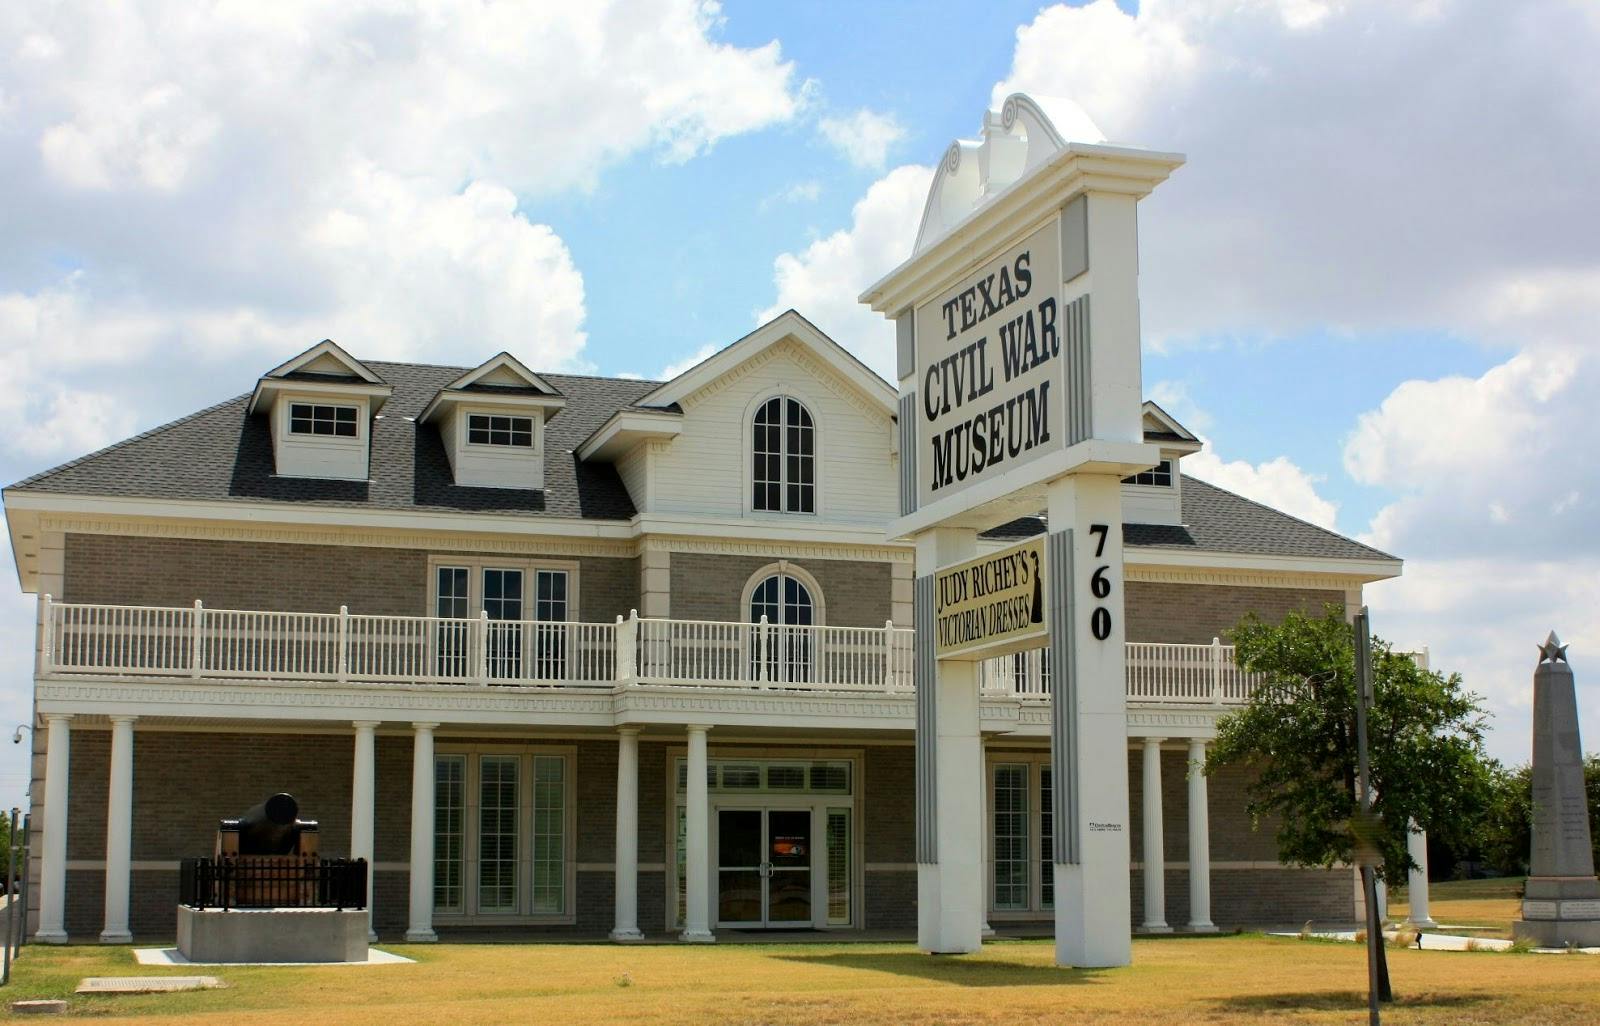 Image - Texas Civil War Museum